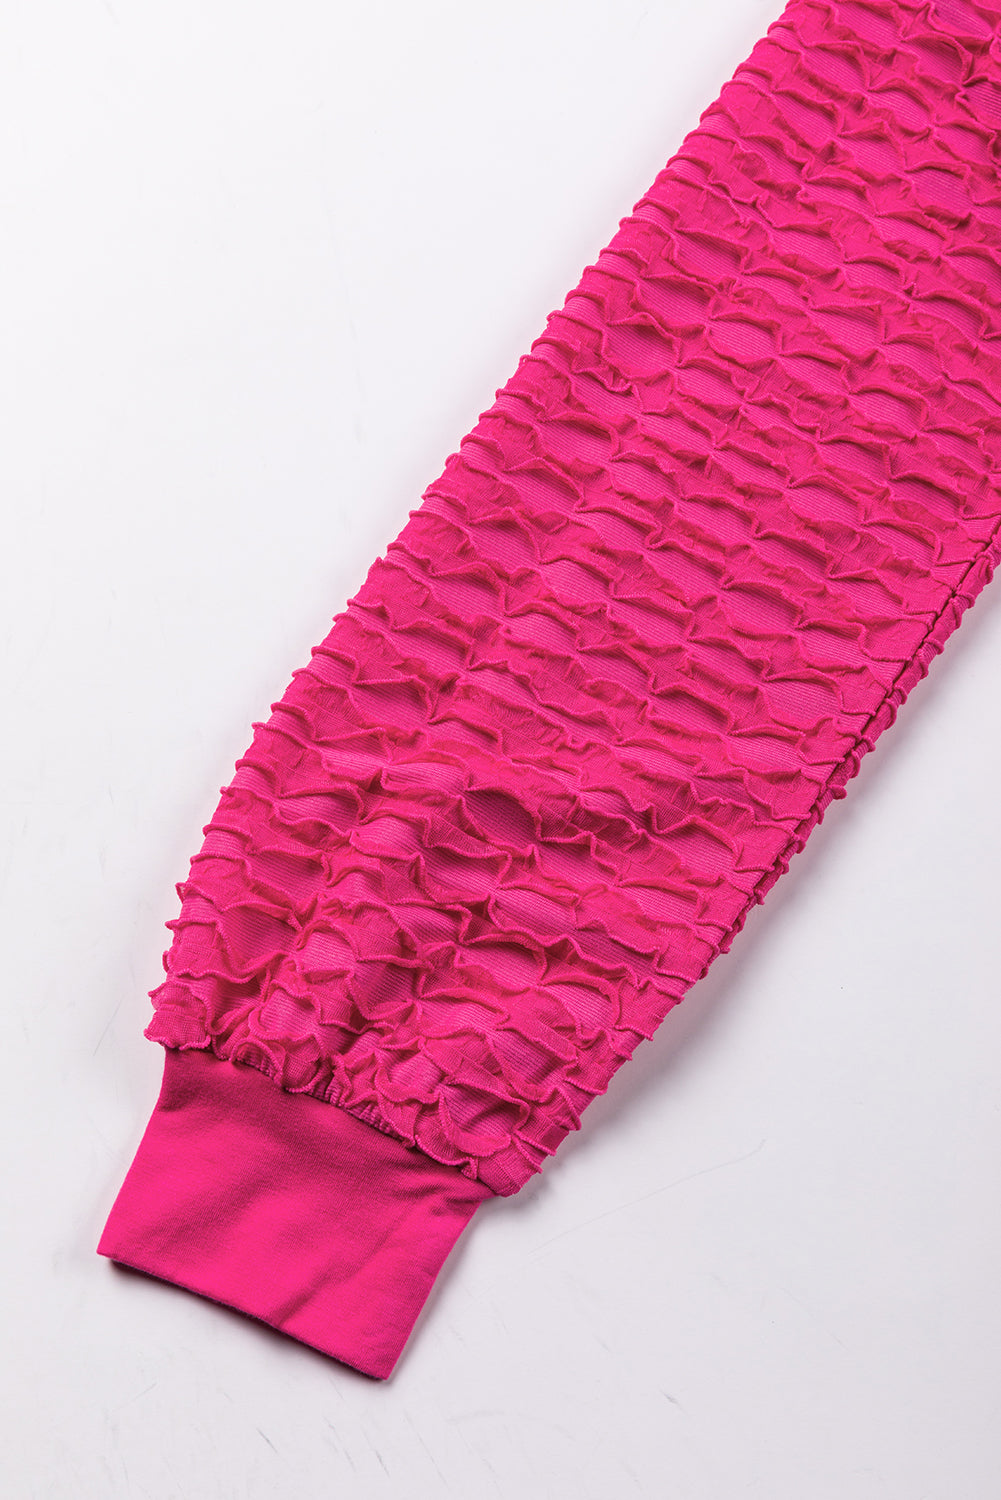 Rožnato rdeč ohlapen, teksturiran zgornji del s spuščenimi rameni z okroglim izrezom